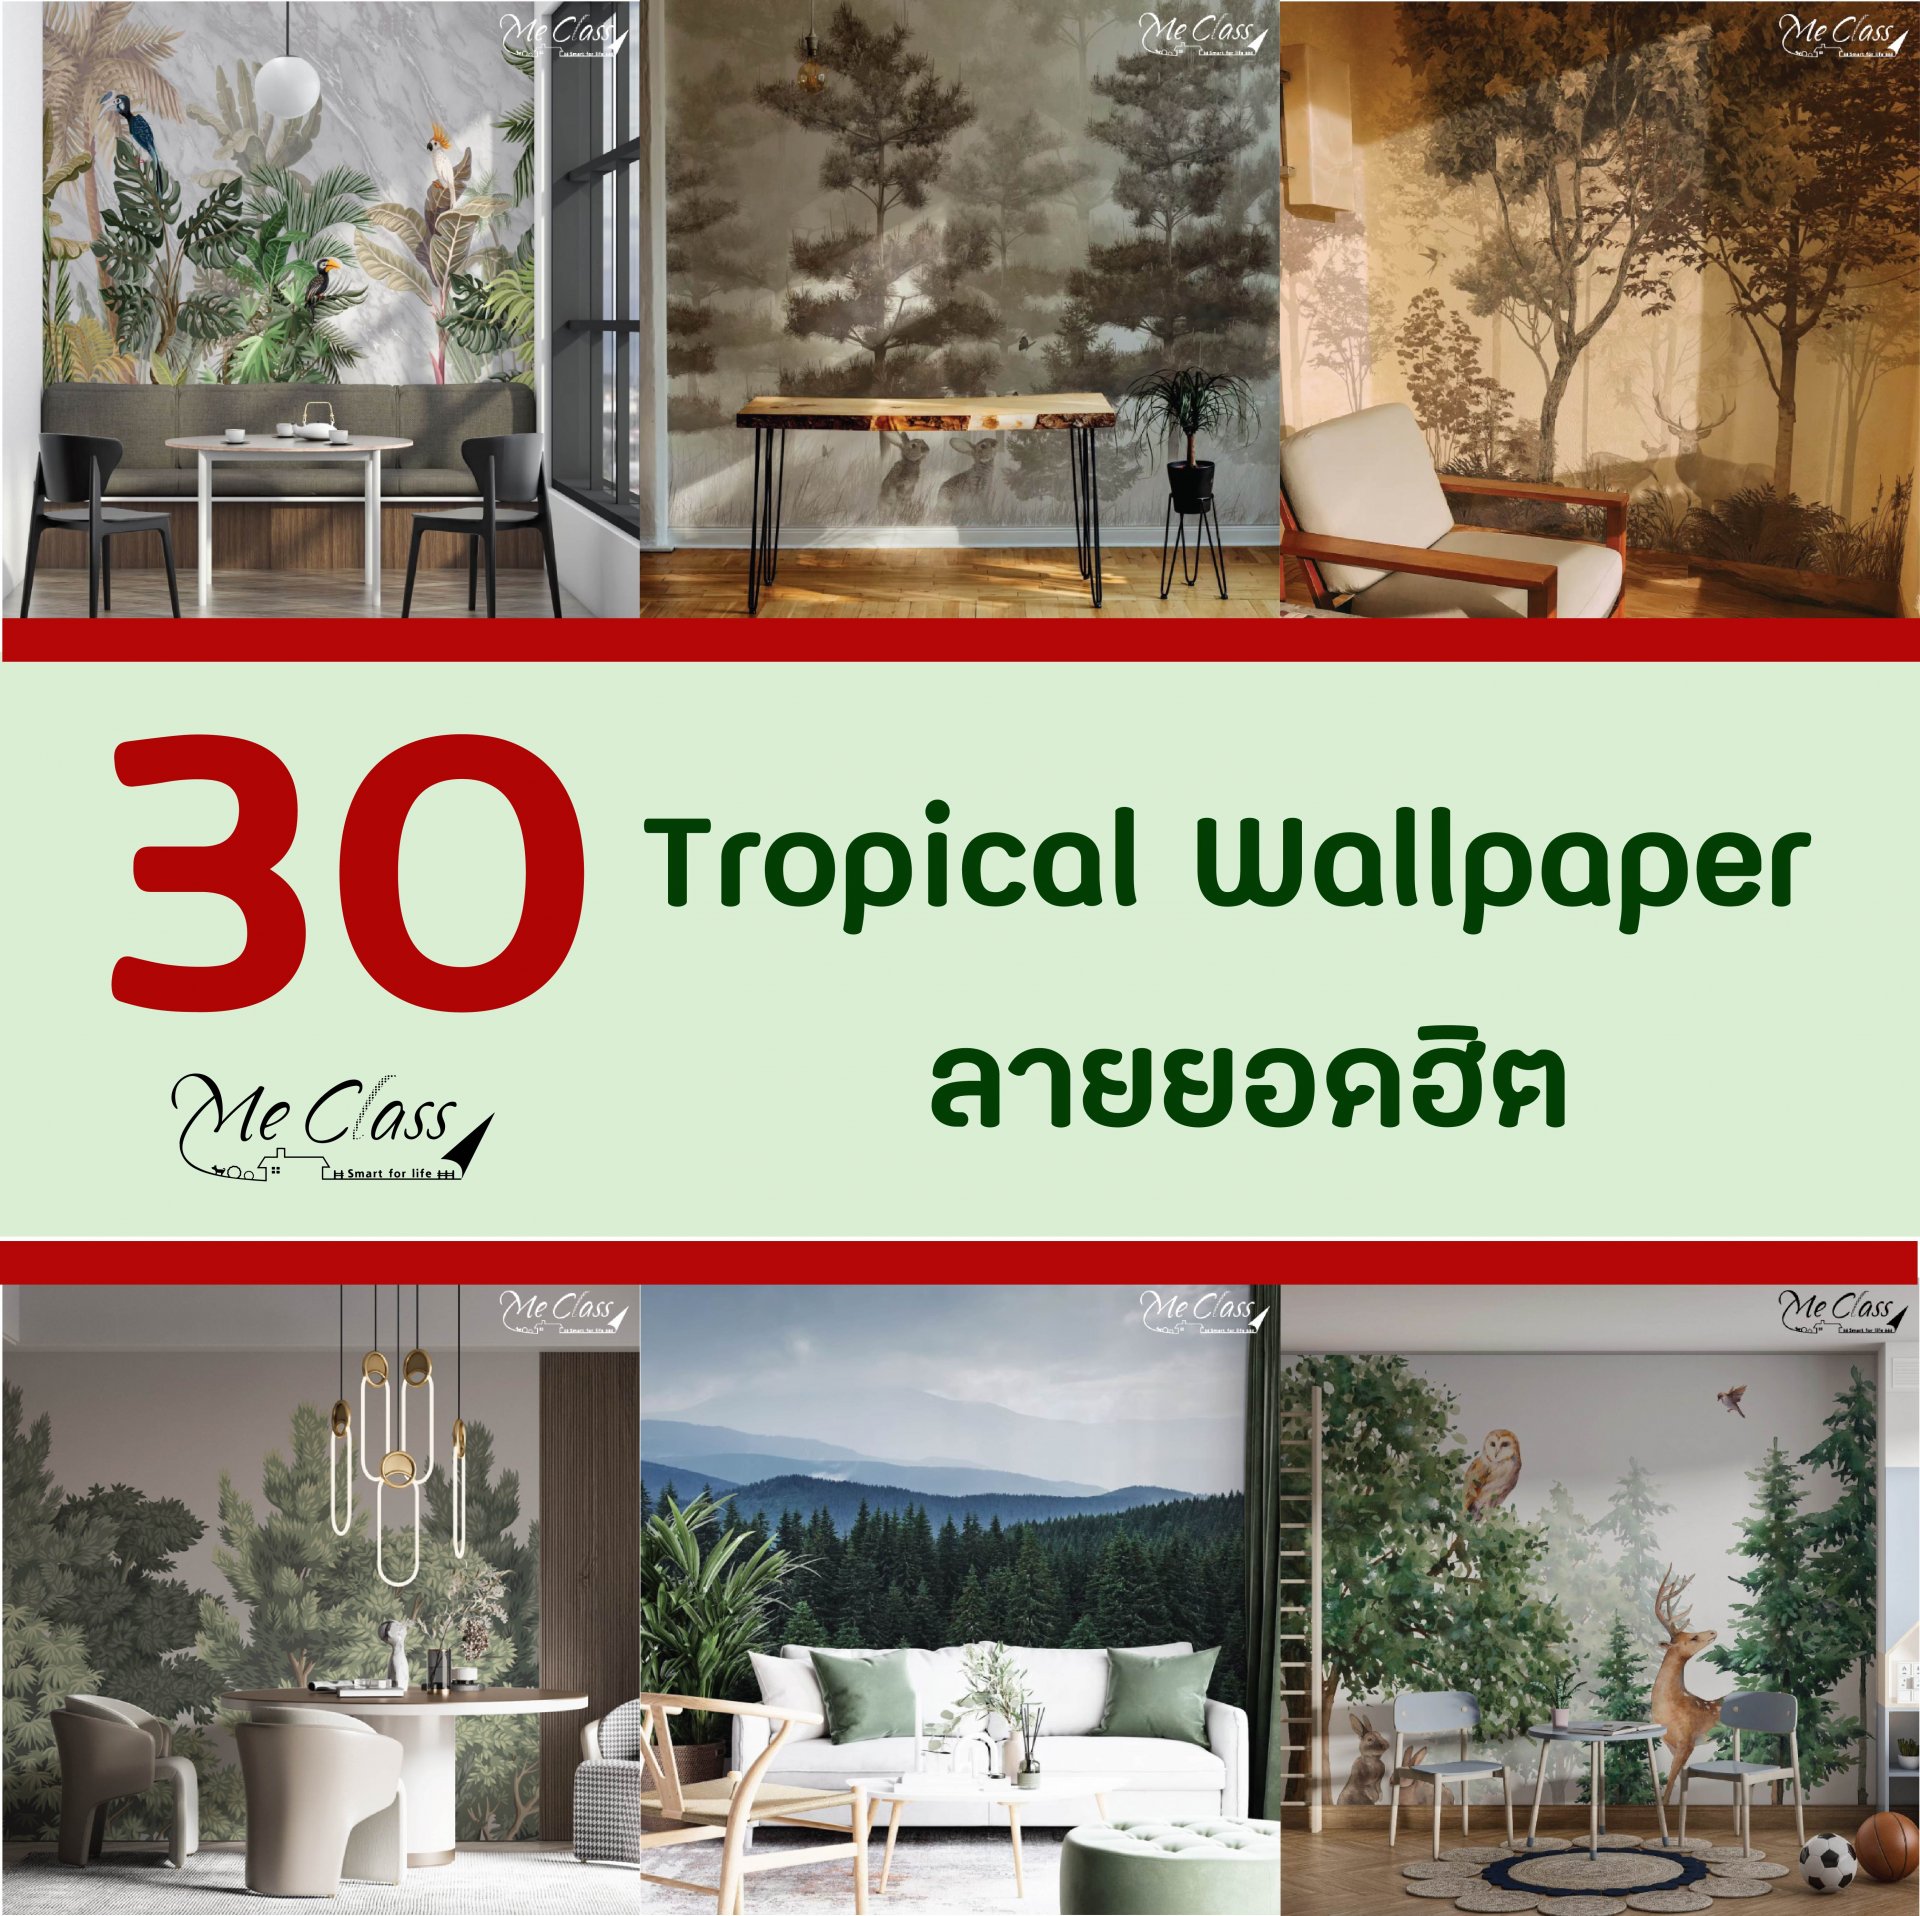 Top 30 วอลเปเปอร์ธรรมชาติ (Tropical Wallpaper) ลายขายดี ติดแล้วปัง!